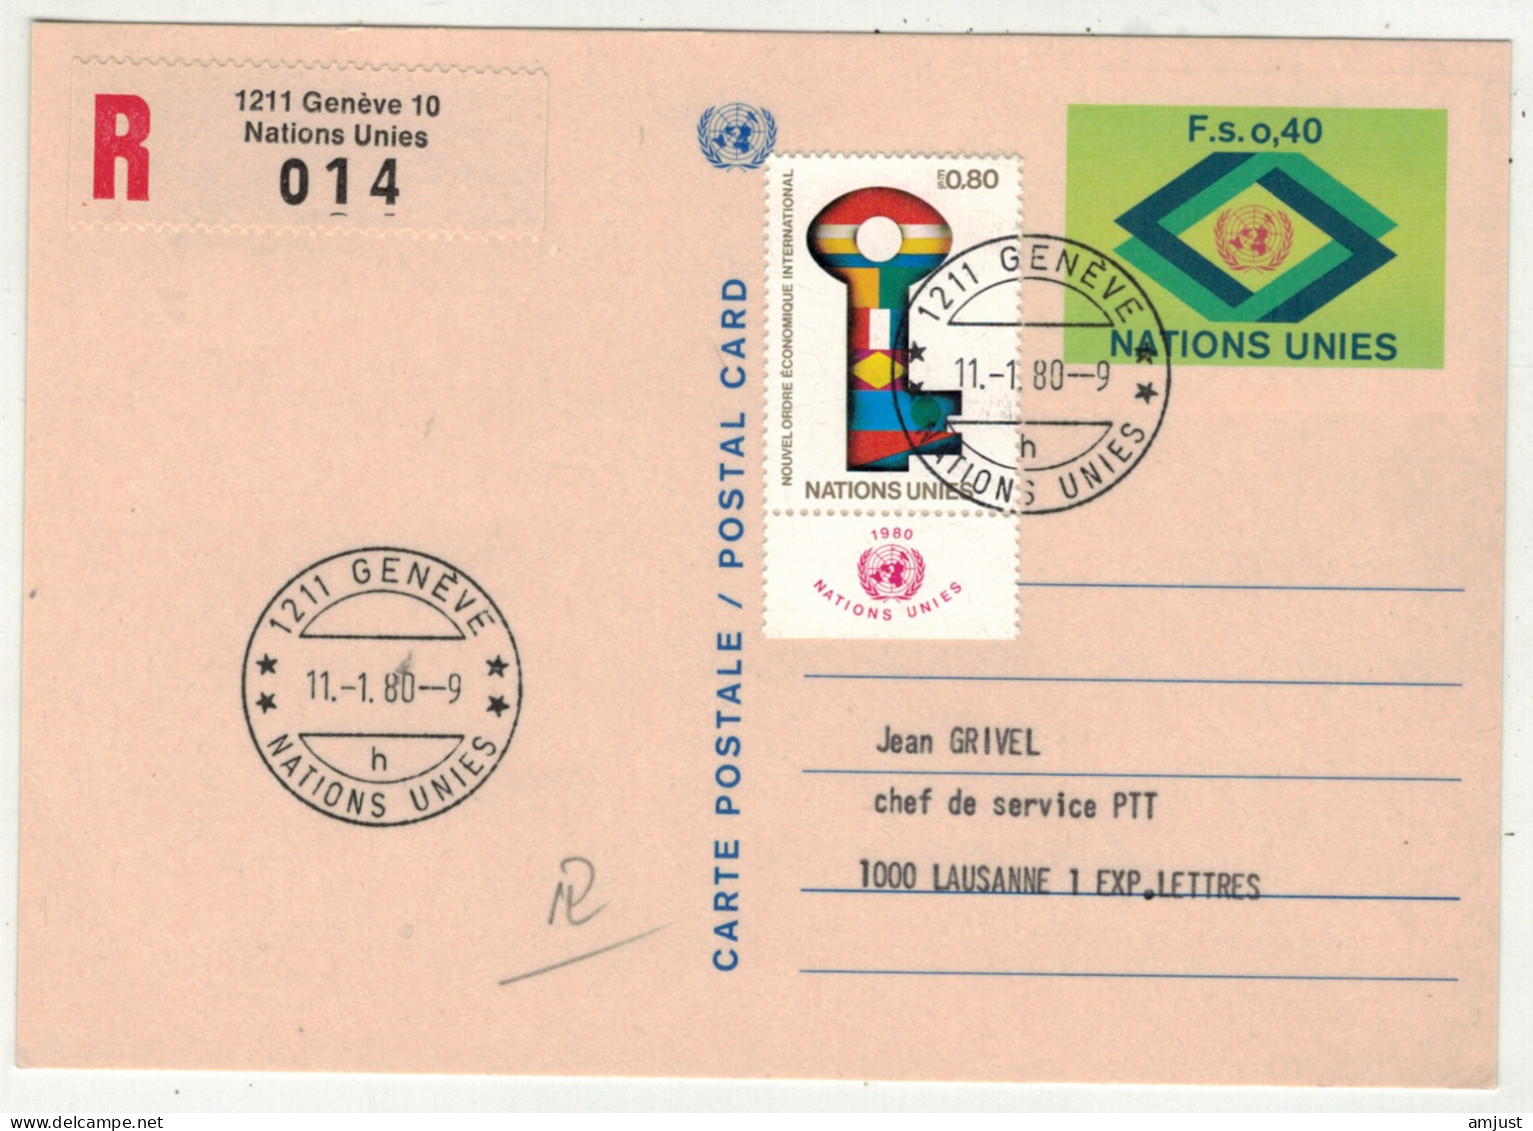 Amérique // Nations Unies // Office De Genève // Entier Postal Recommandé Pour Lausanne - Storia Postale